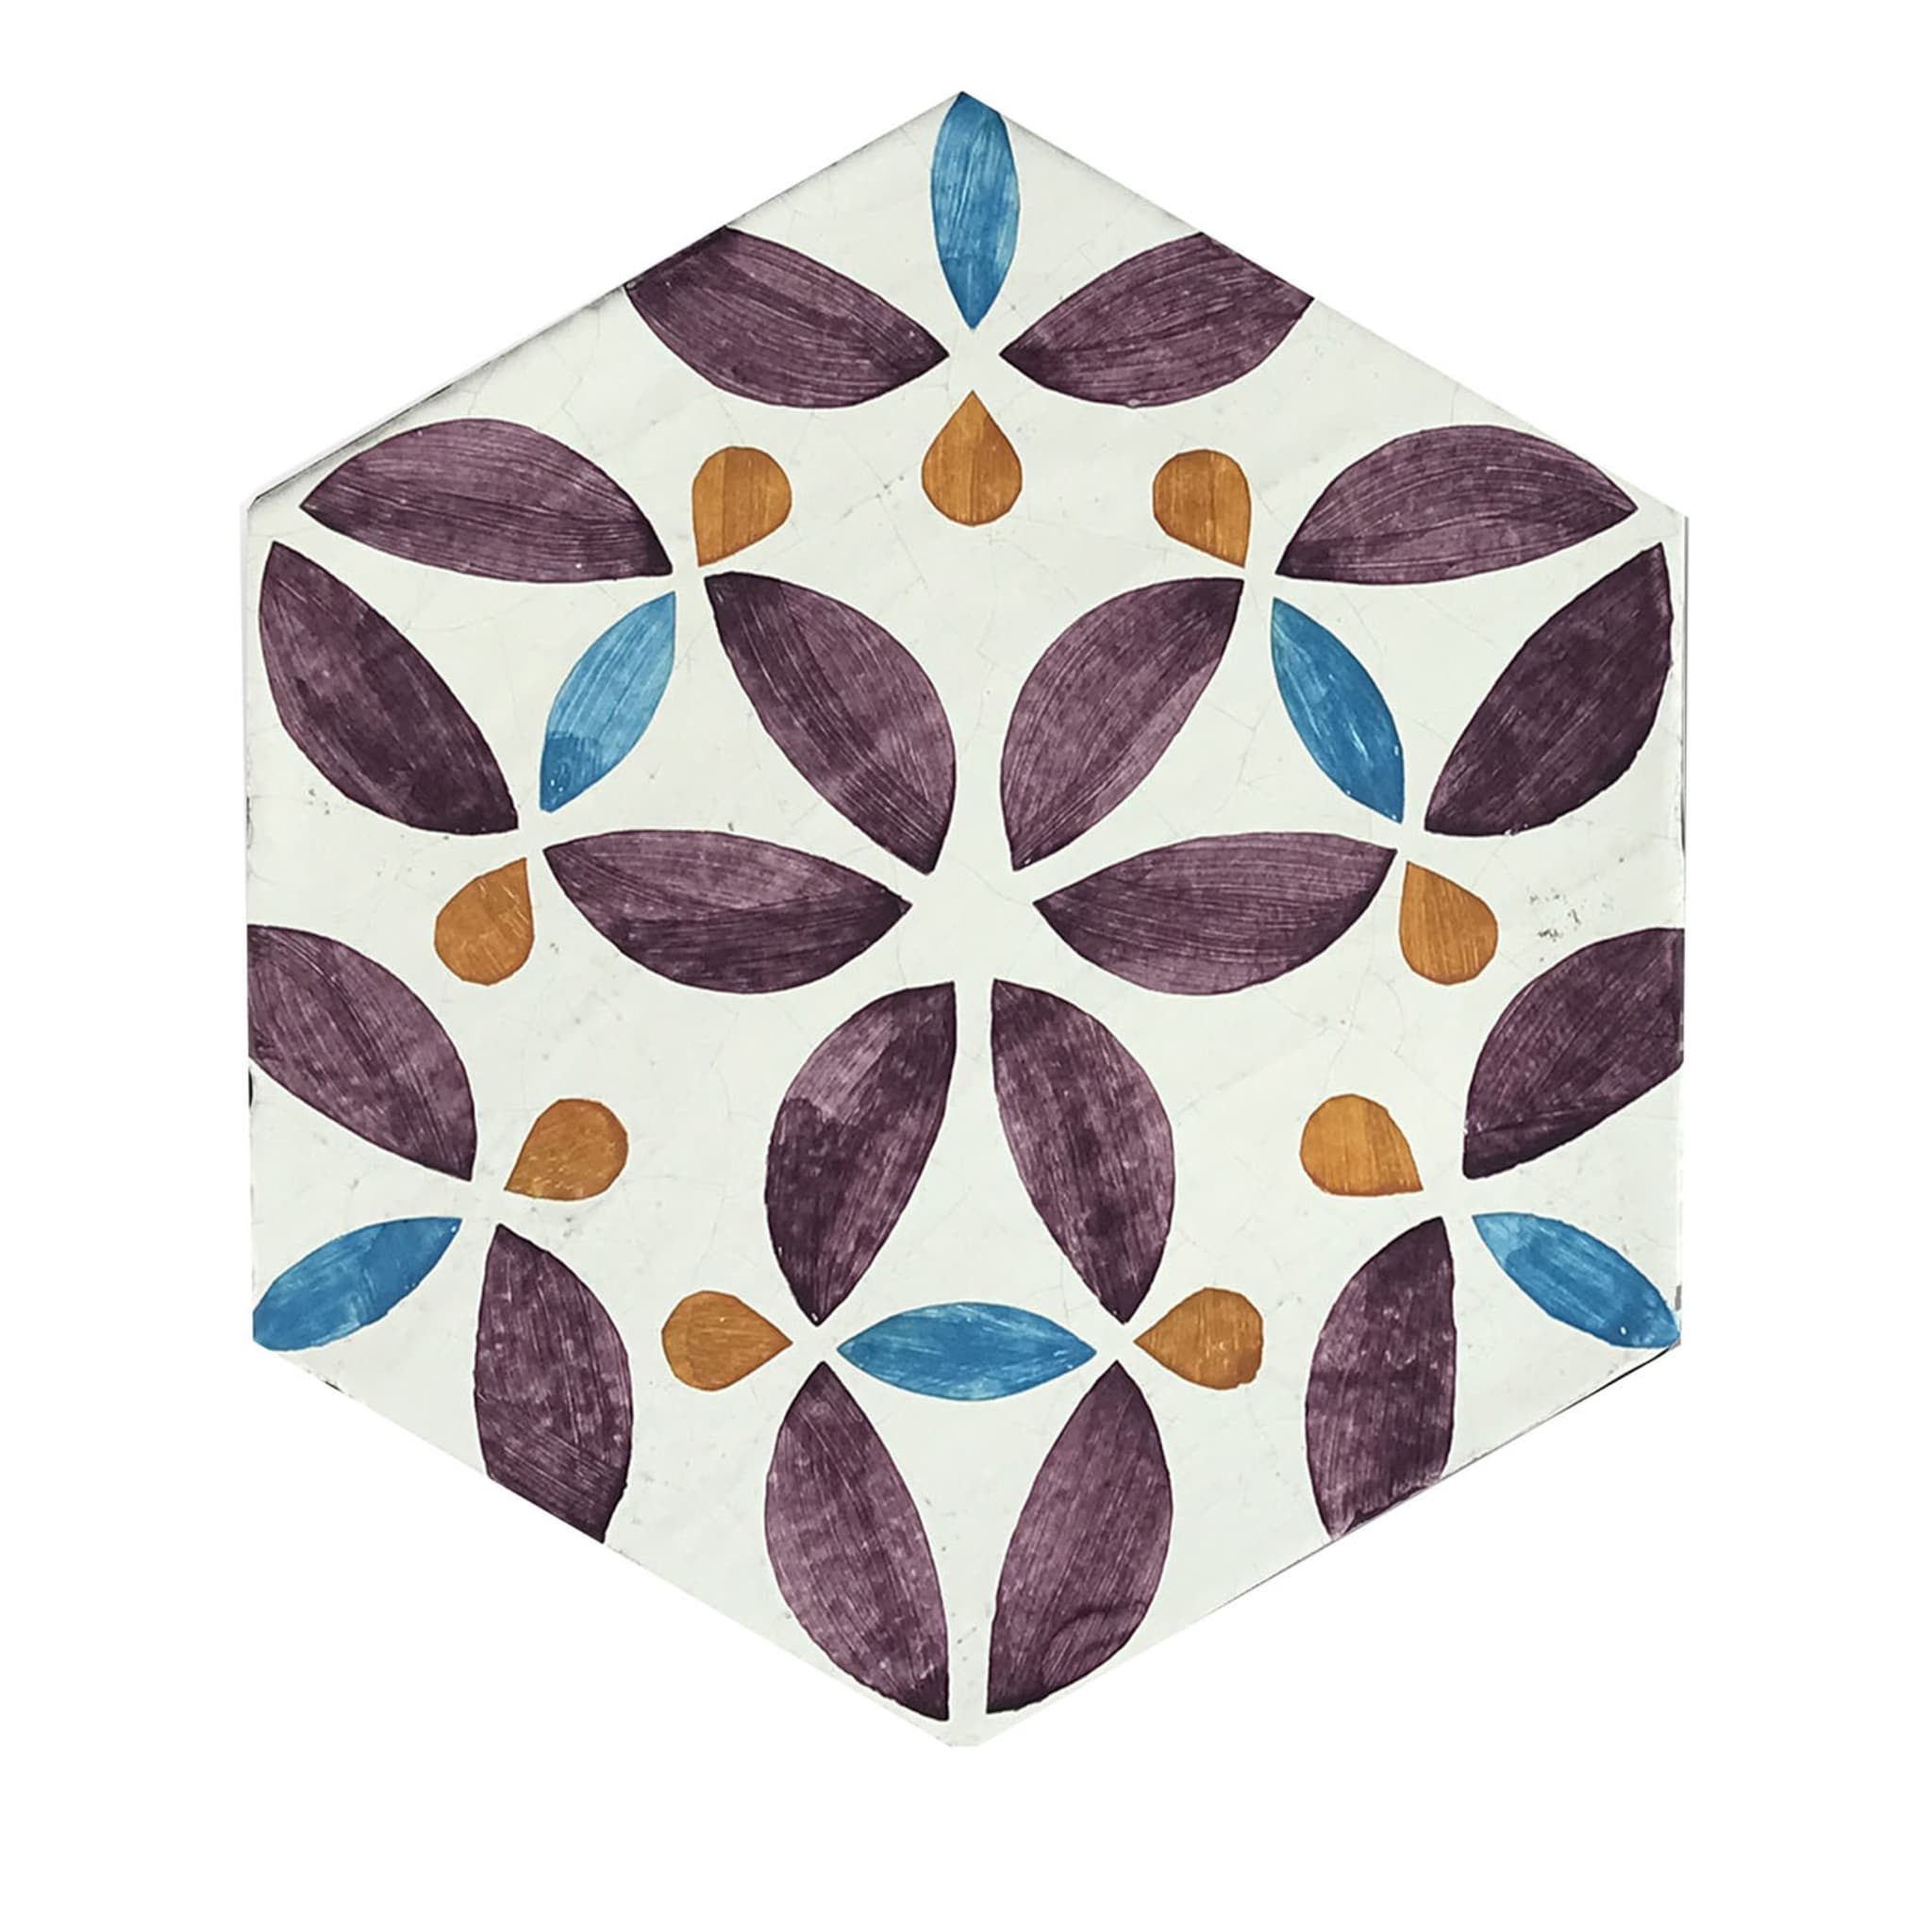 Daamè - Ensemble de 28 carreaux hexagonaux violets - Vue principale